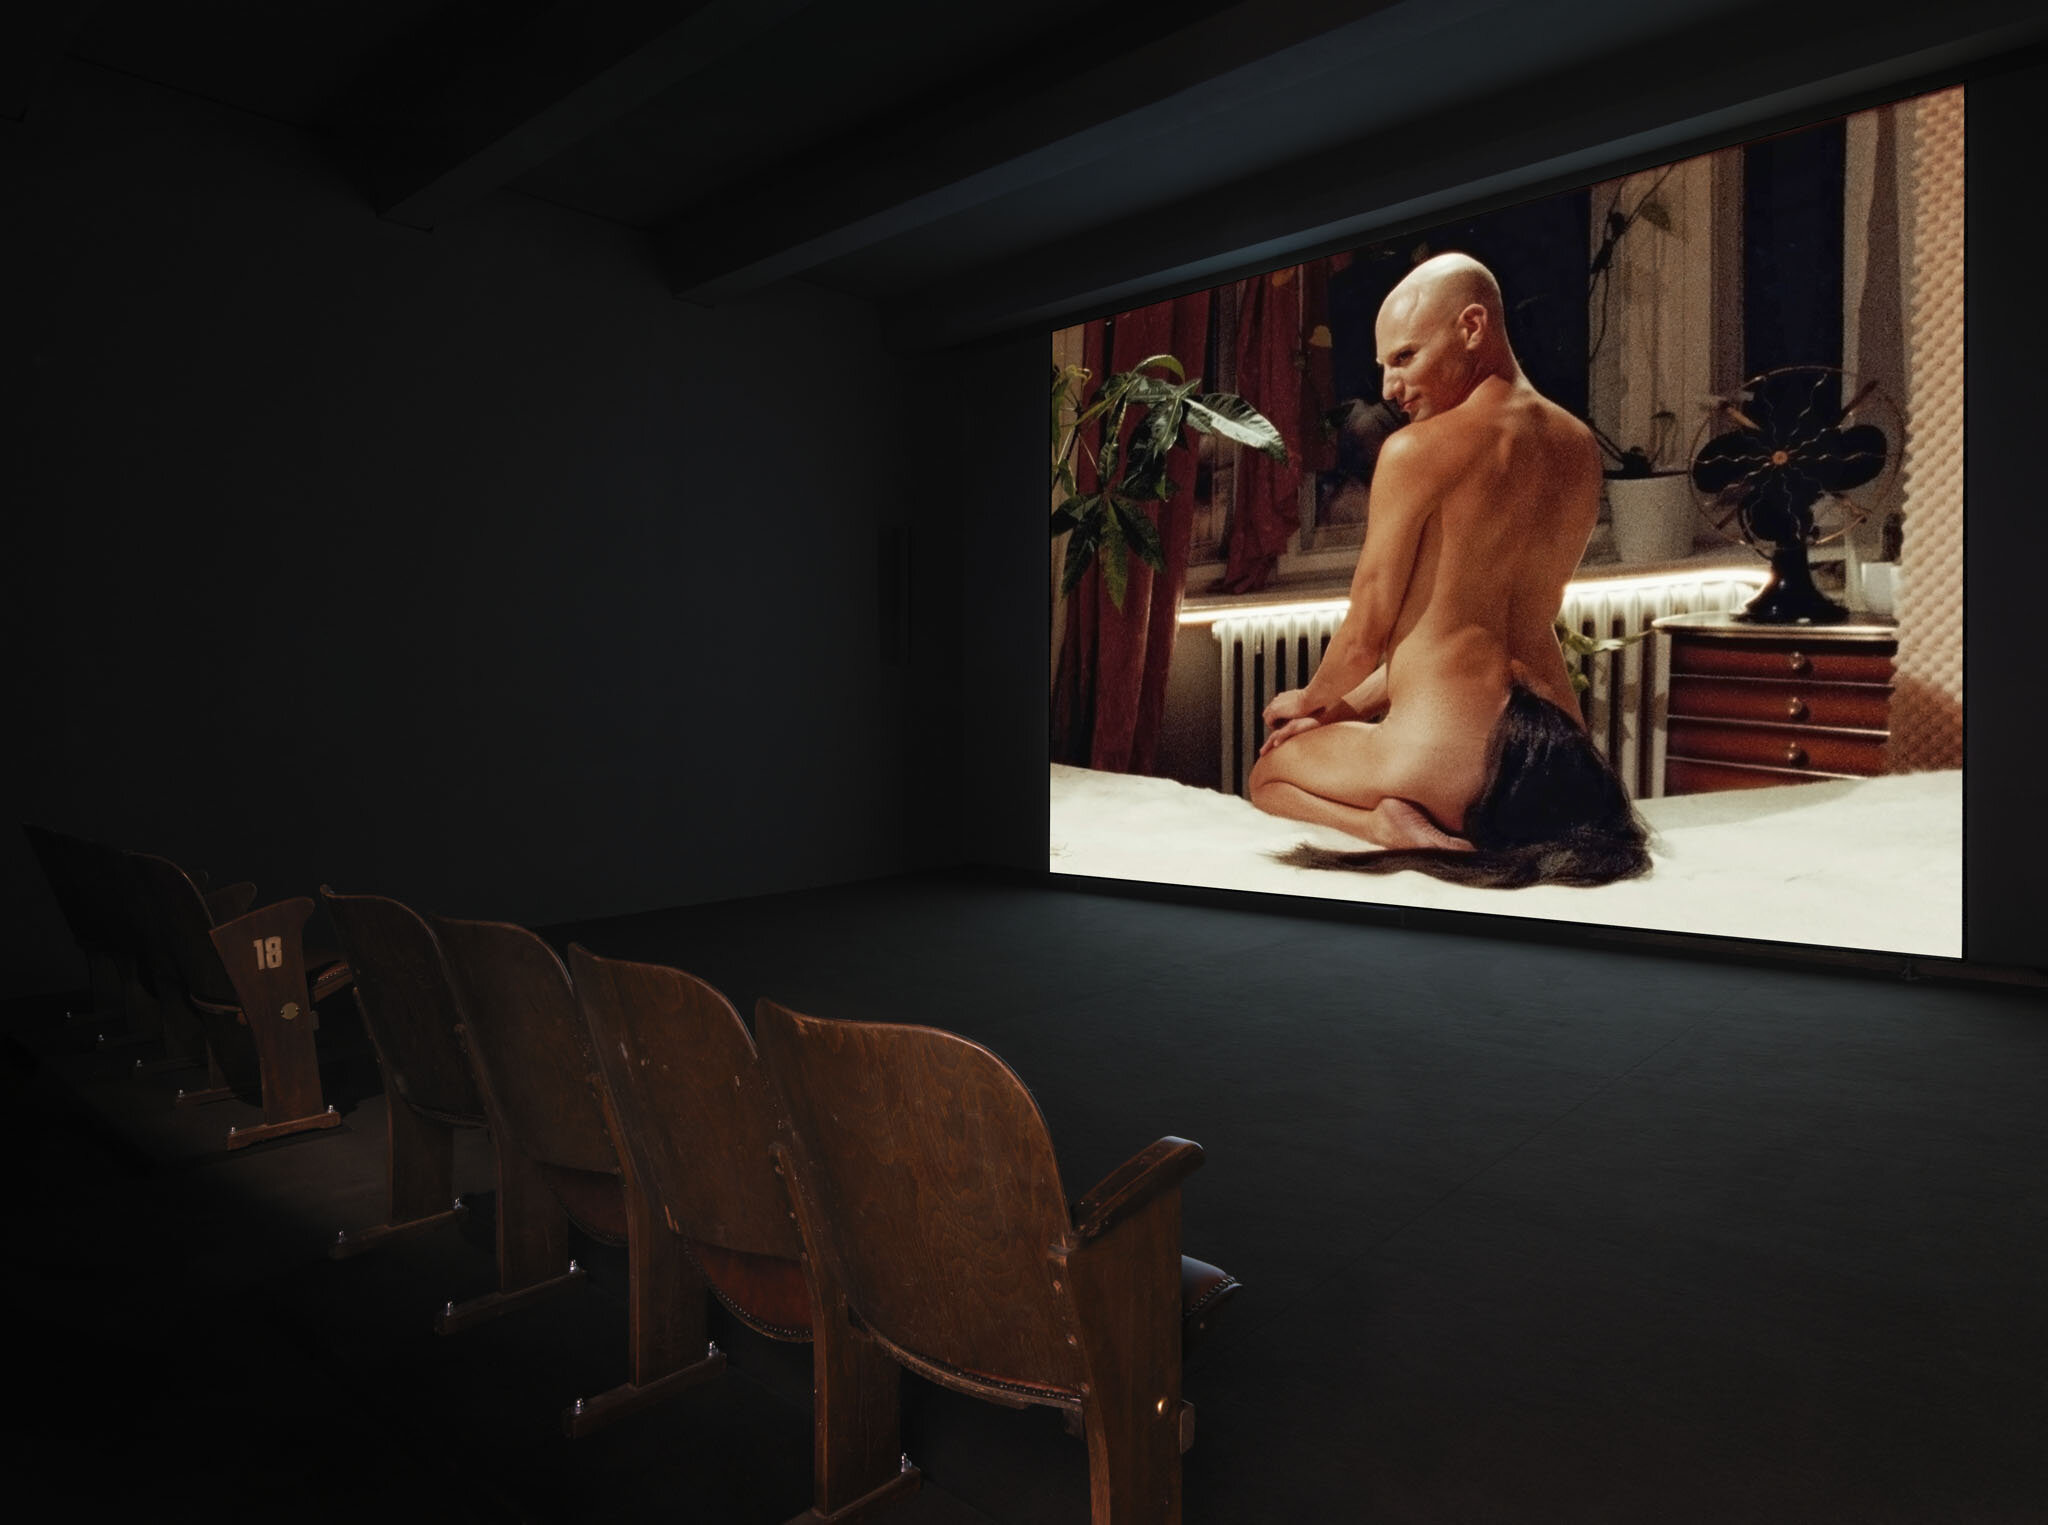   Ann Oren.   Passage , 2020, exhibition view, M1 VideoSpace, KINDL, photo: Jens Ziehe 